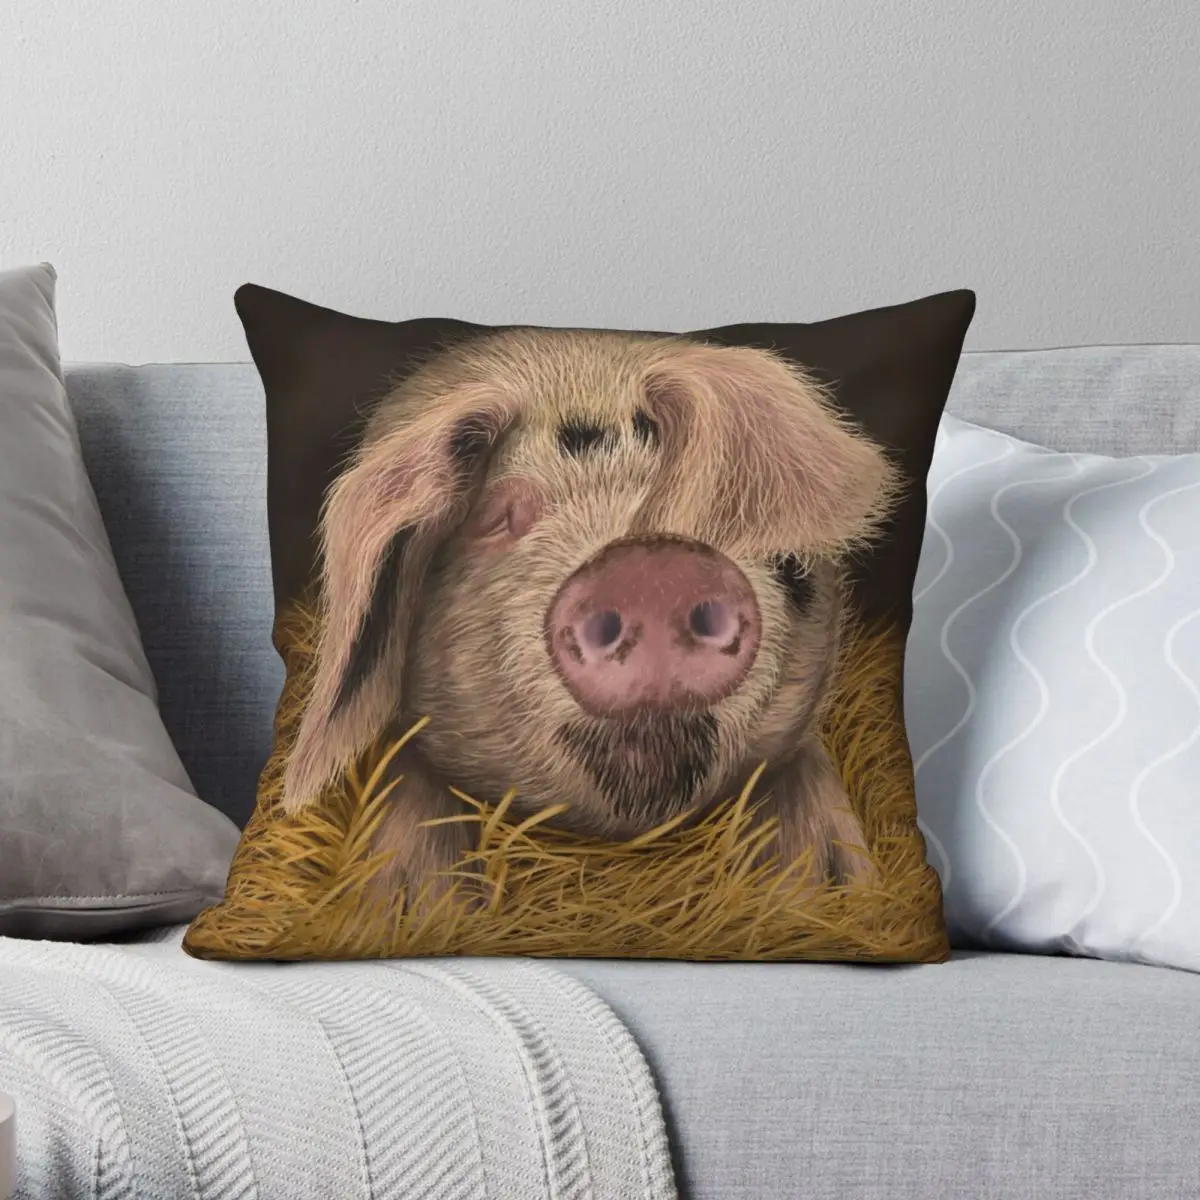 

Квадратный чехол для подушки с изображением Минни, свиньи, глаустер, из полиэстера, льняной, бархатной ткани, креативный декоративный чехол ...